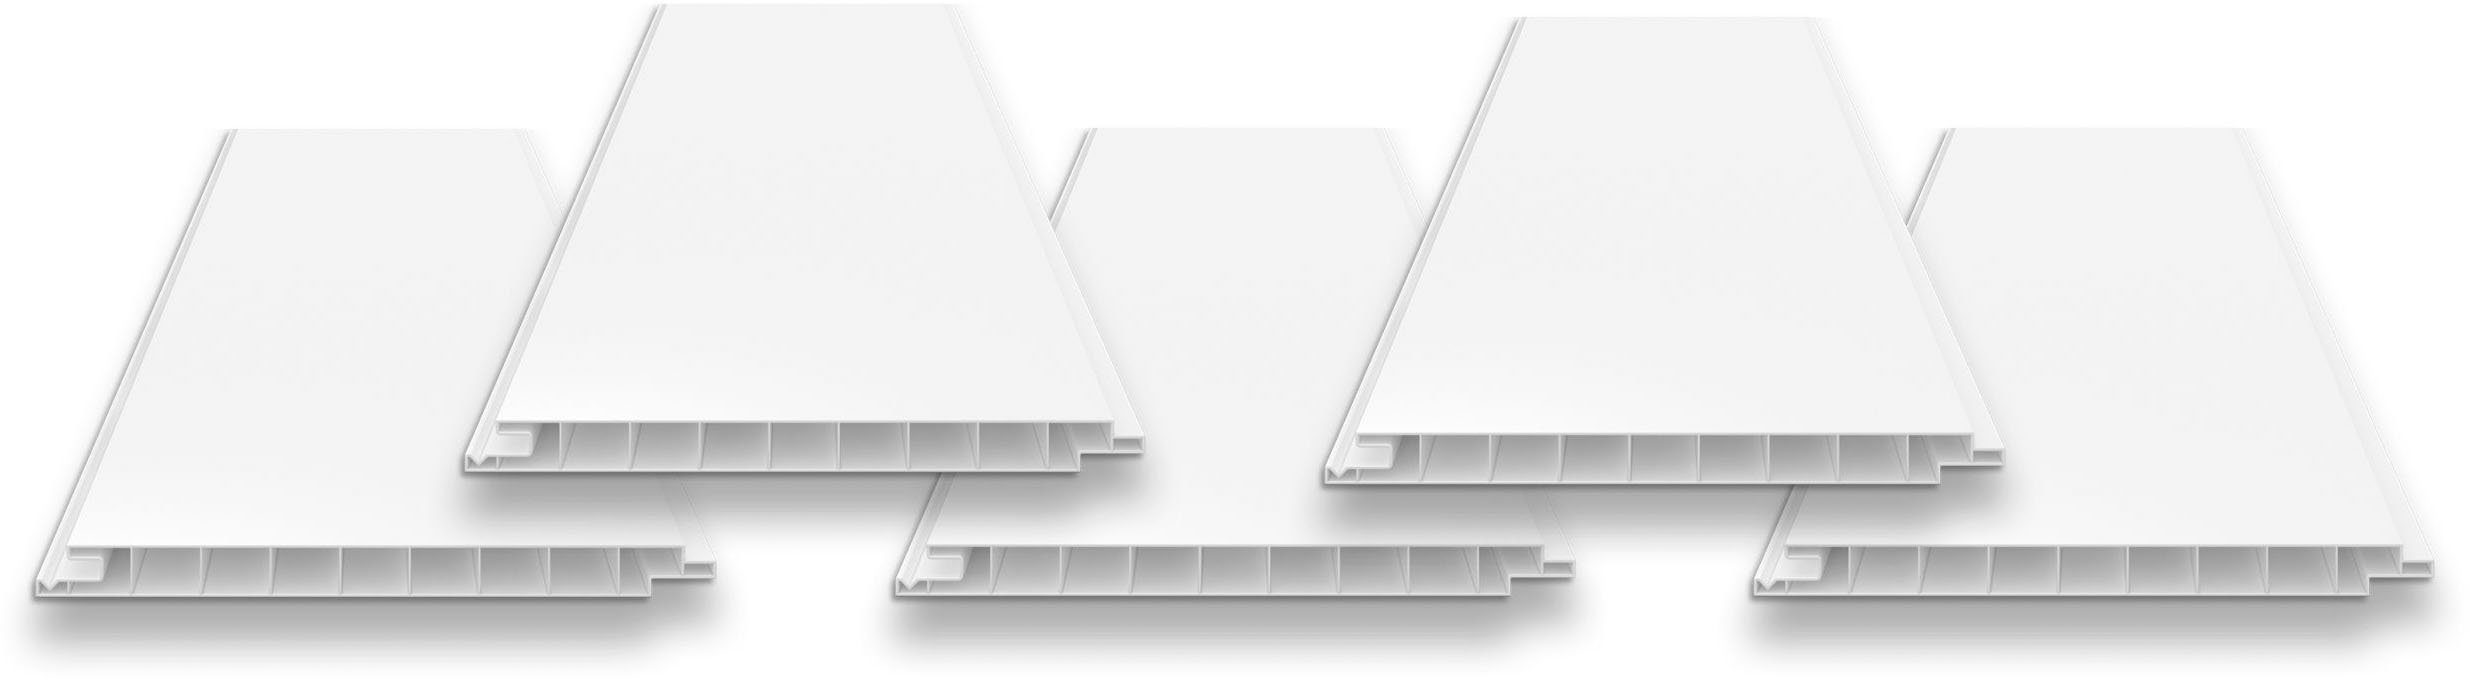 Tetzner & Jentzsch Verkleidungspaneel VP 200 weiß, PVC-Hohlkammerprofil, BxL: 20x600 cm, (Spar-Set, 5-tlg., 6 m) beidseitig glatt, ohne V-Fuge, ideal für homogene Flächen